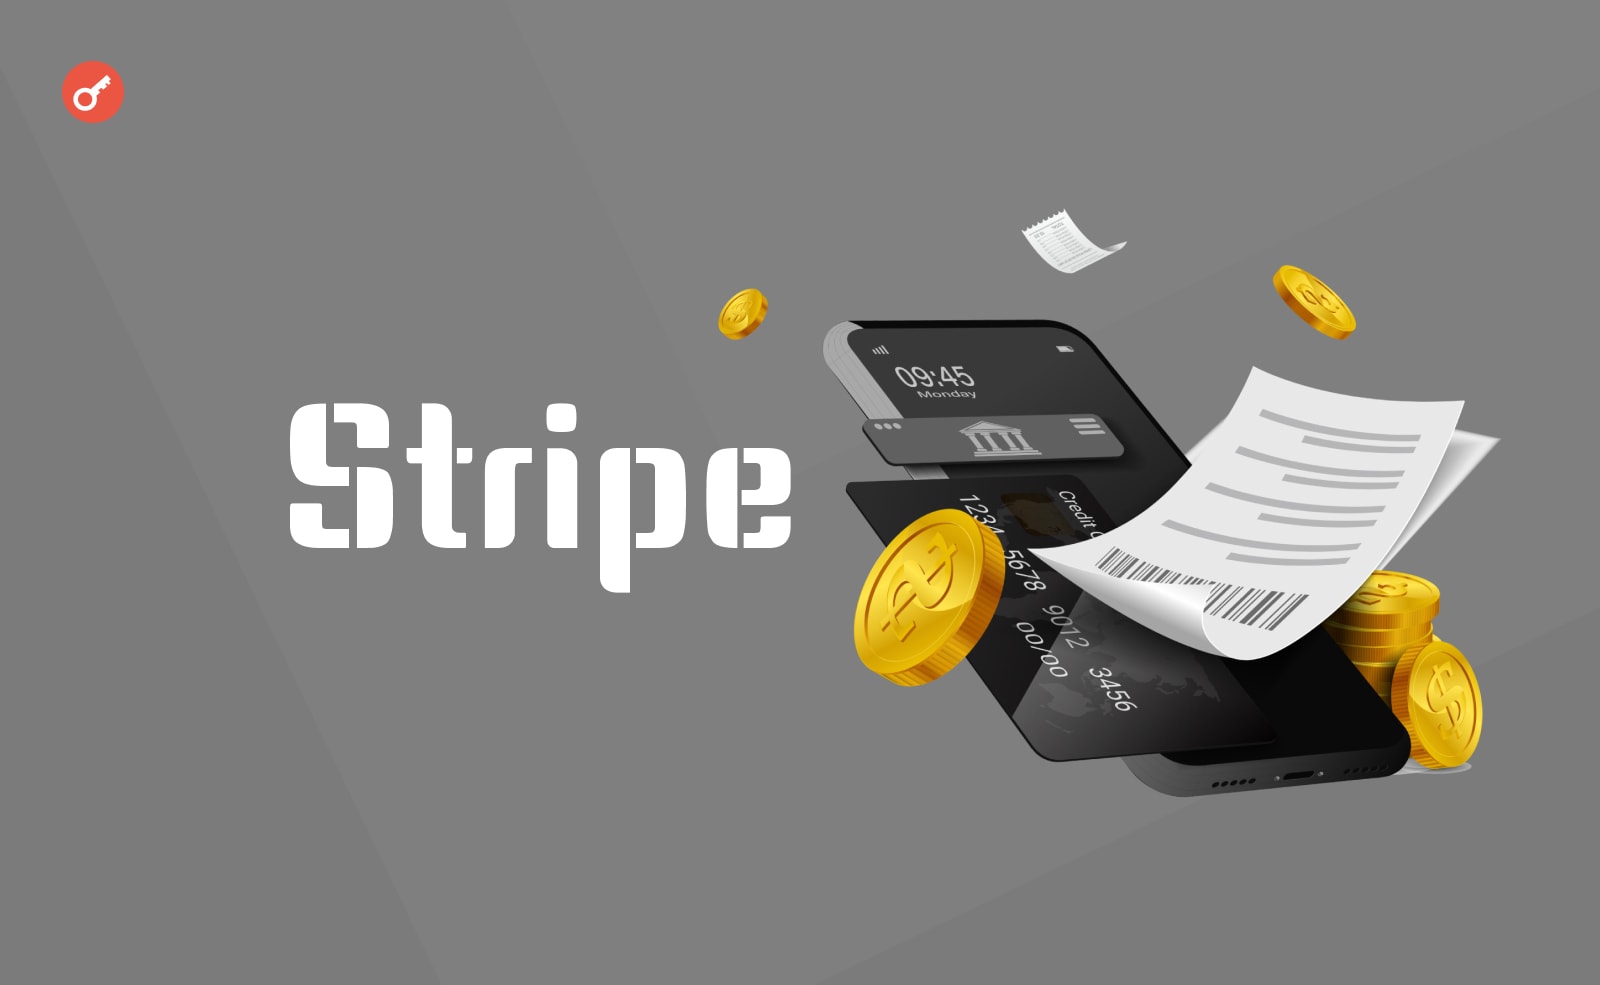 Сервіс платежів Stripe залучив $6,5 млрд фінансування. Головний колаж новини.